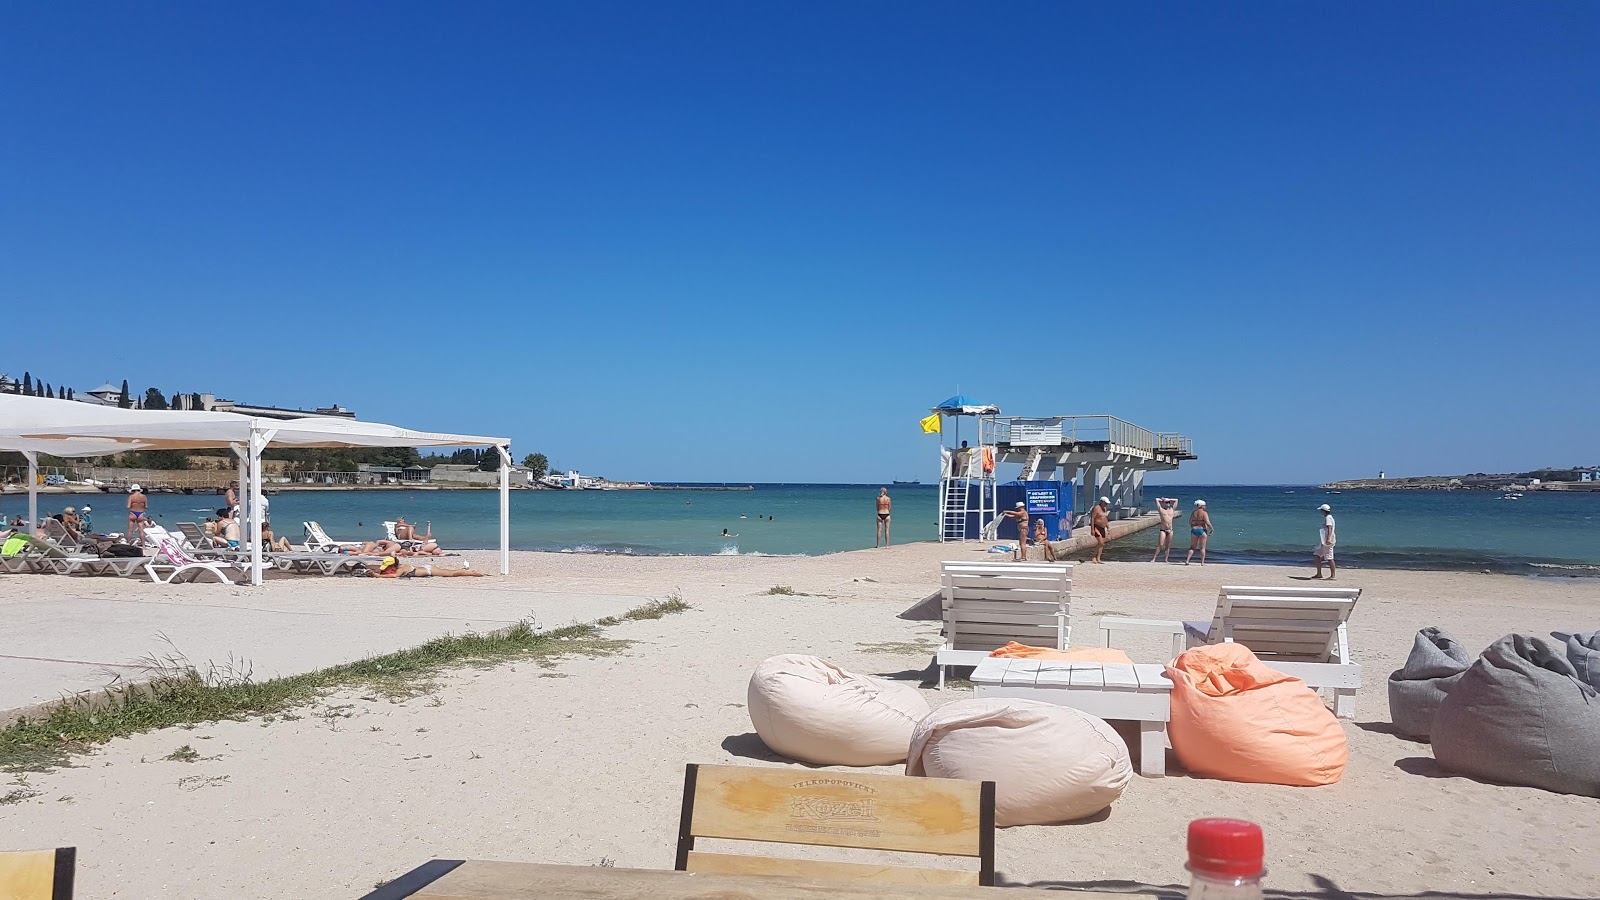 Omega beach'in fotoğrafı - Çocuklu aile gezginleri için önerilir